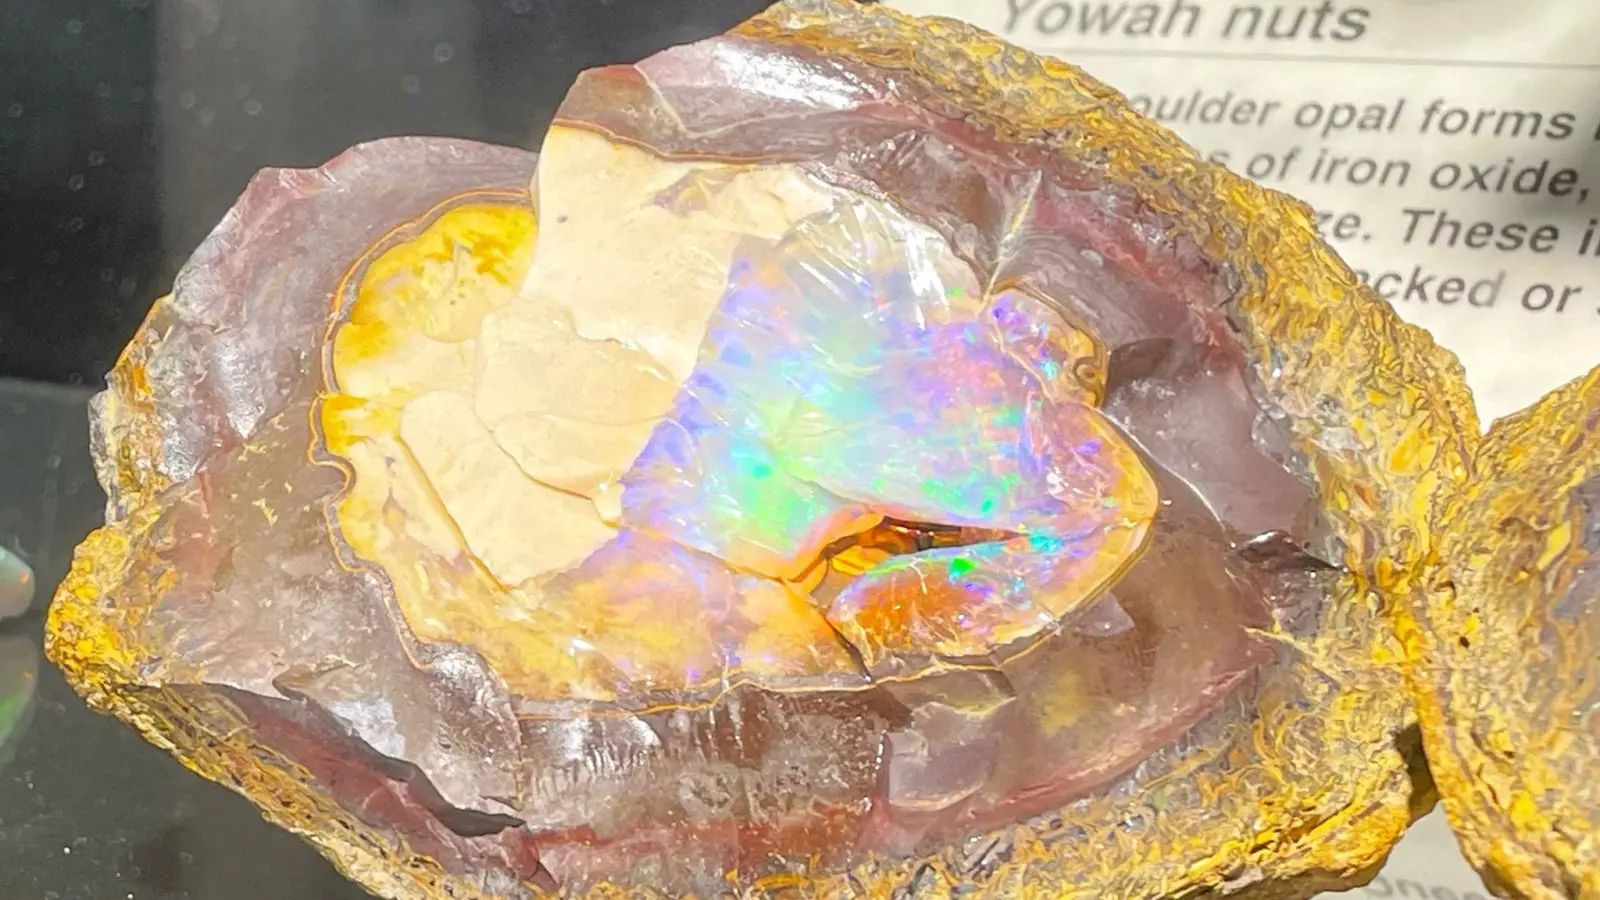 Ein unbearbeiteter Opal, der von seinem Muttergestein umgeben ist, sticht als Exponat der National Opal Collection hervor. (Foto: Michelle Ostwald/dpa)